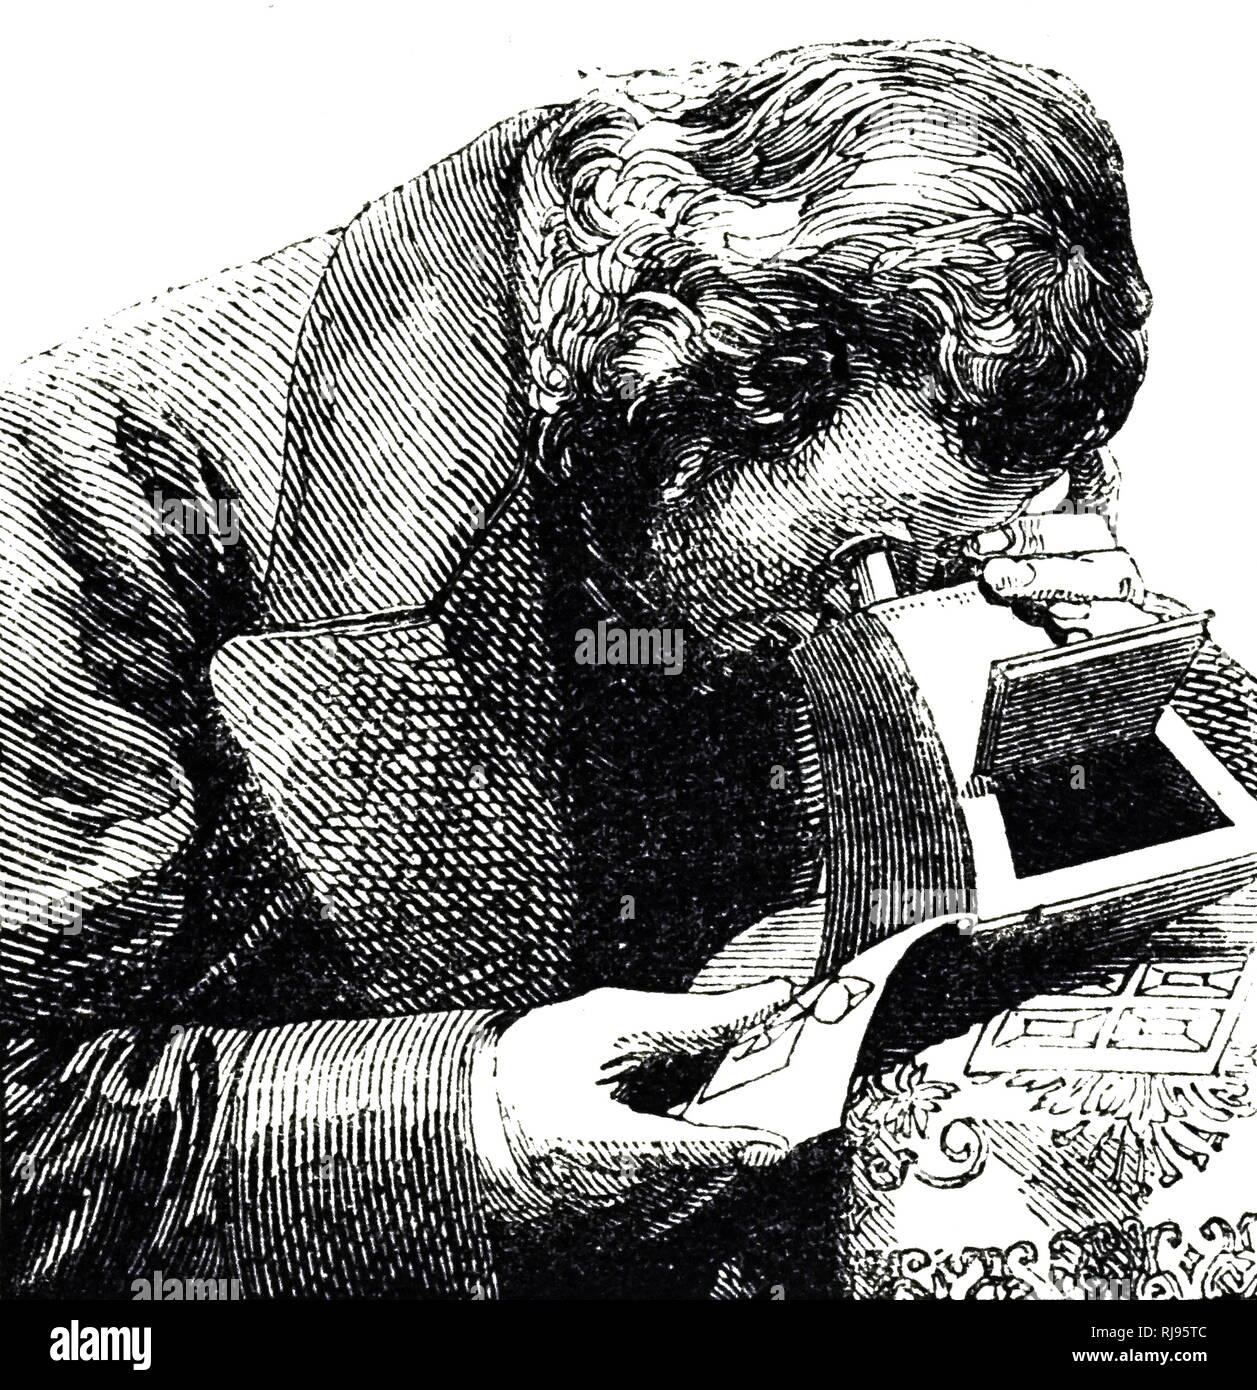 Un grabado que retrata a un hombre con un estereoscopio, un dispositivo por el cual dos fotografías del mismo objeto tomadas en ángulos ligeramente distintos se consideran juntos, creando una impresión de profundidad y solidez. Fecha del siglo XIX Foto de stock